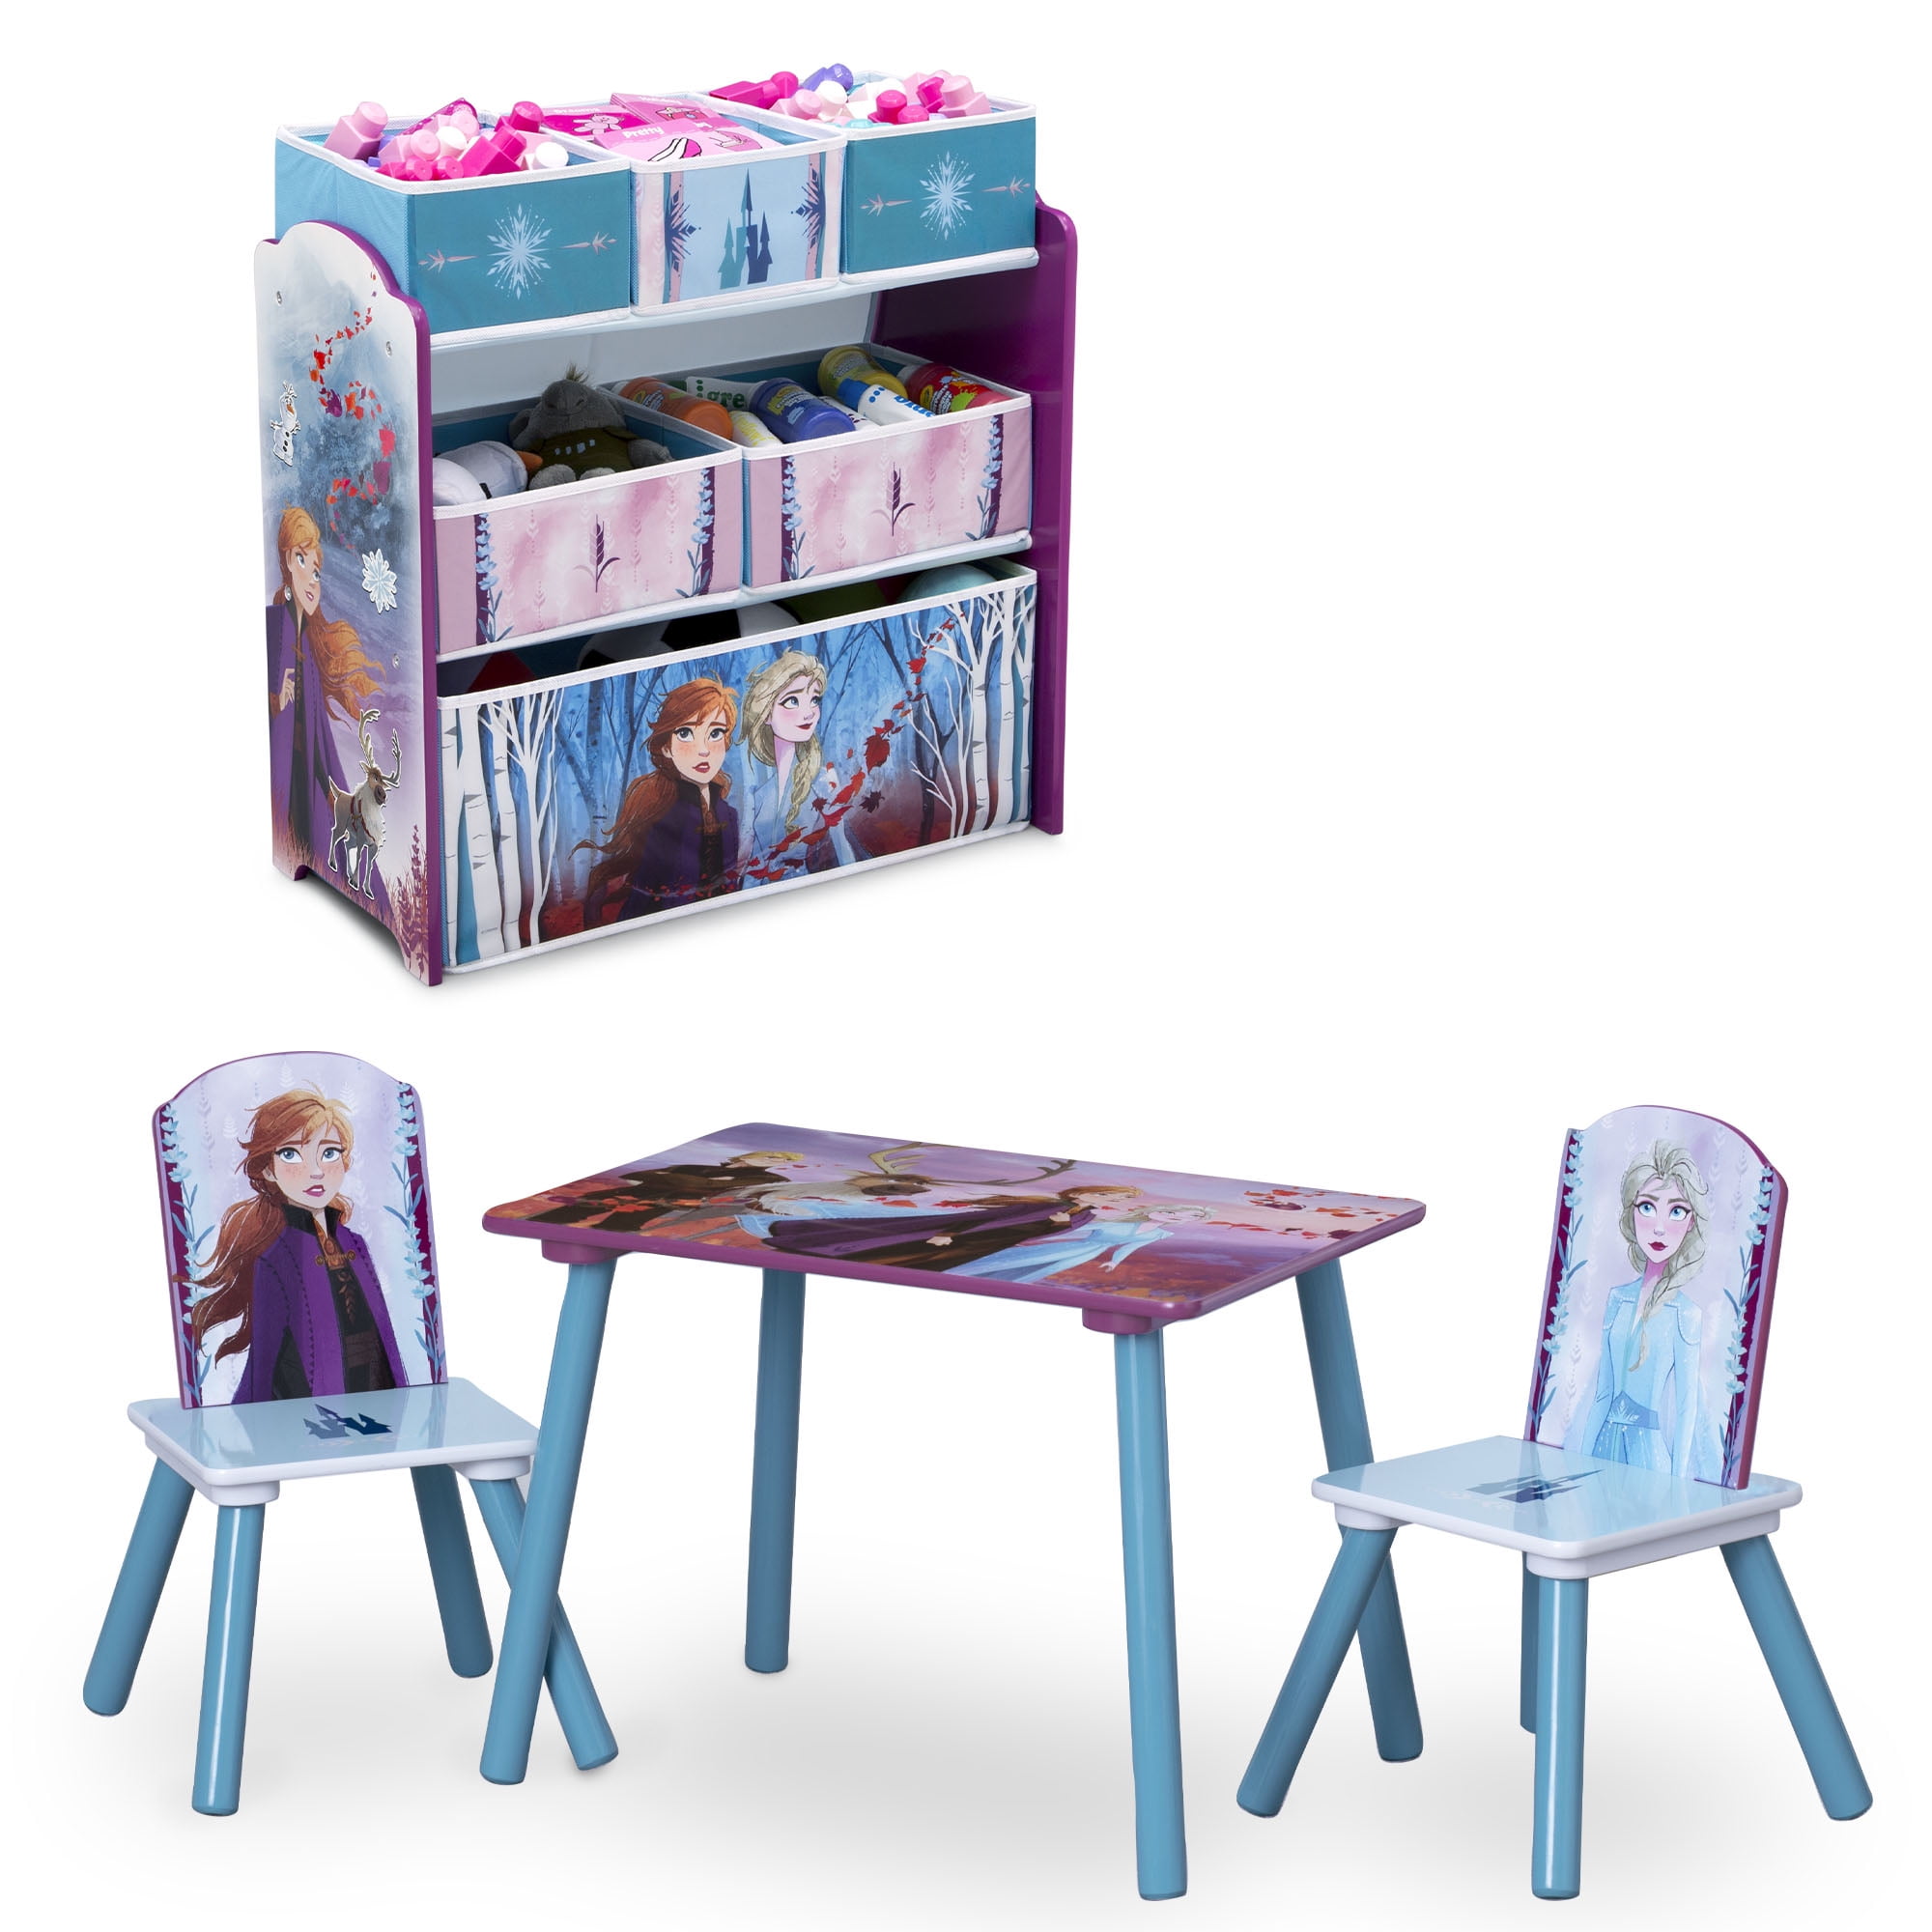 Frozen II Design and Store 6 Bin Toy Organizer by Delta Children 